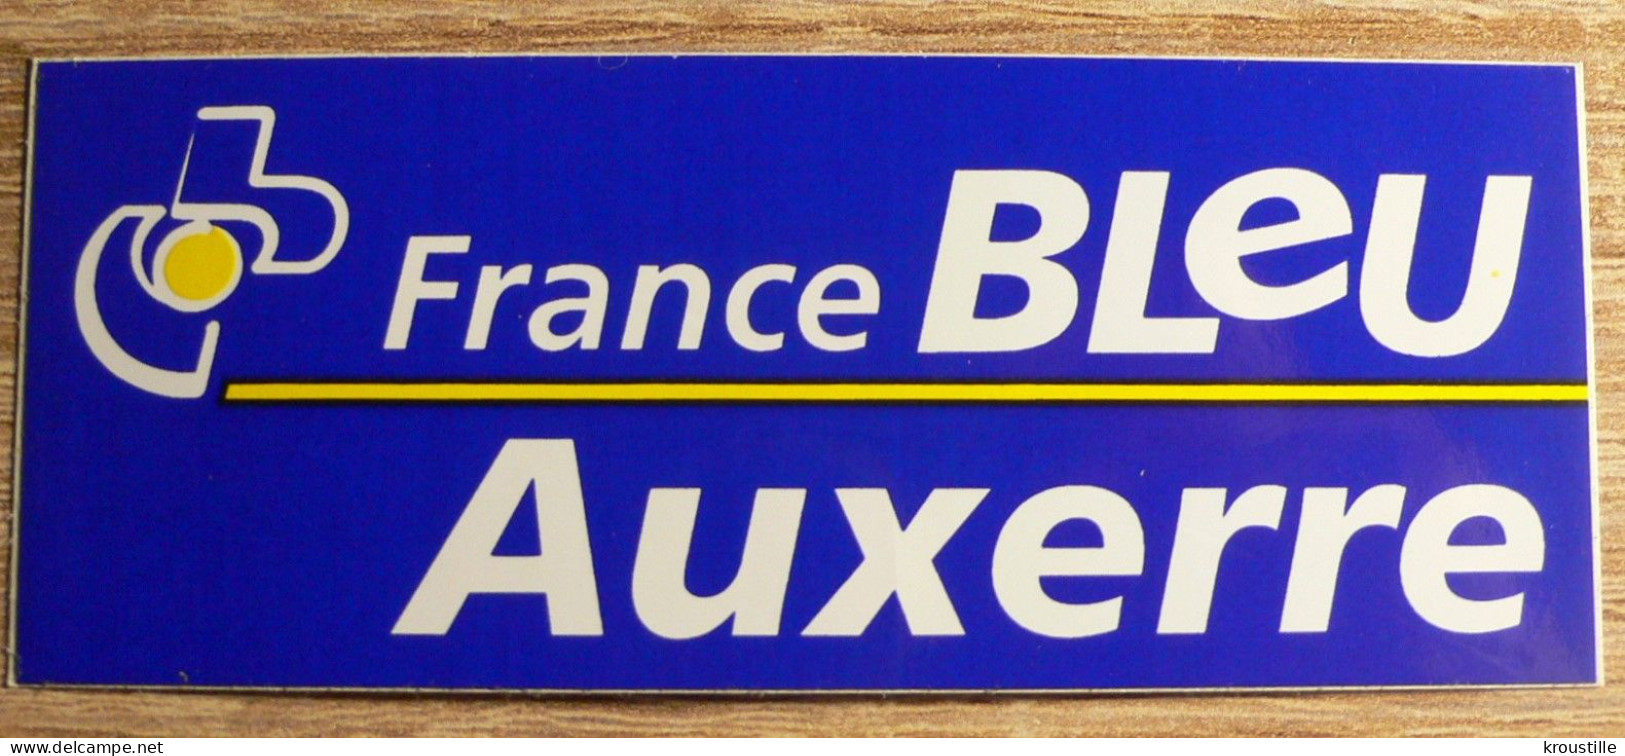 AUTOCOLLANT RADIO : FRANCE BLEU AUXERRE - Autocollants